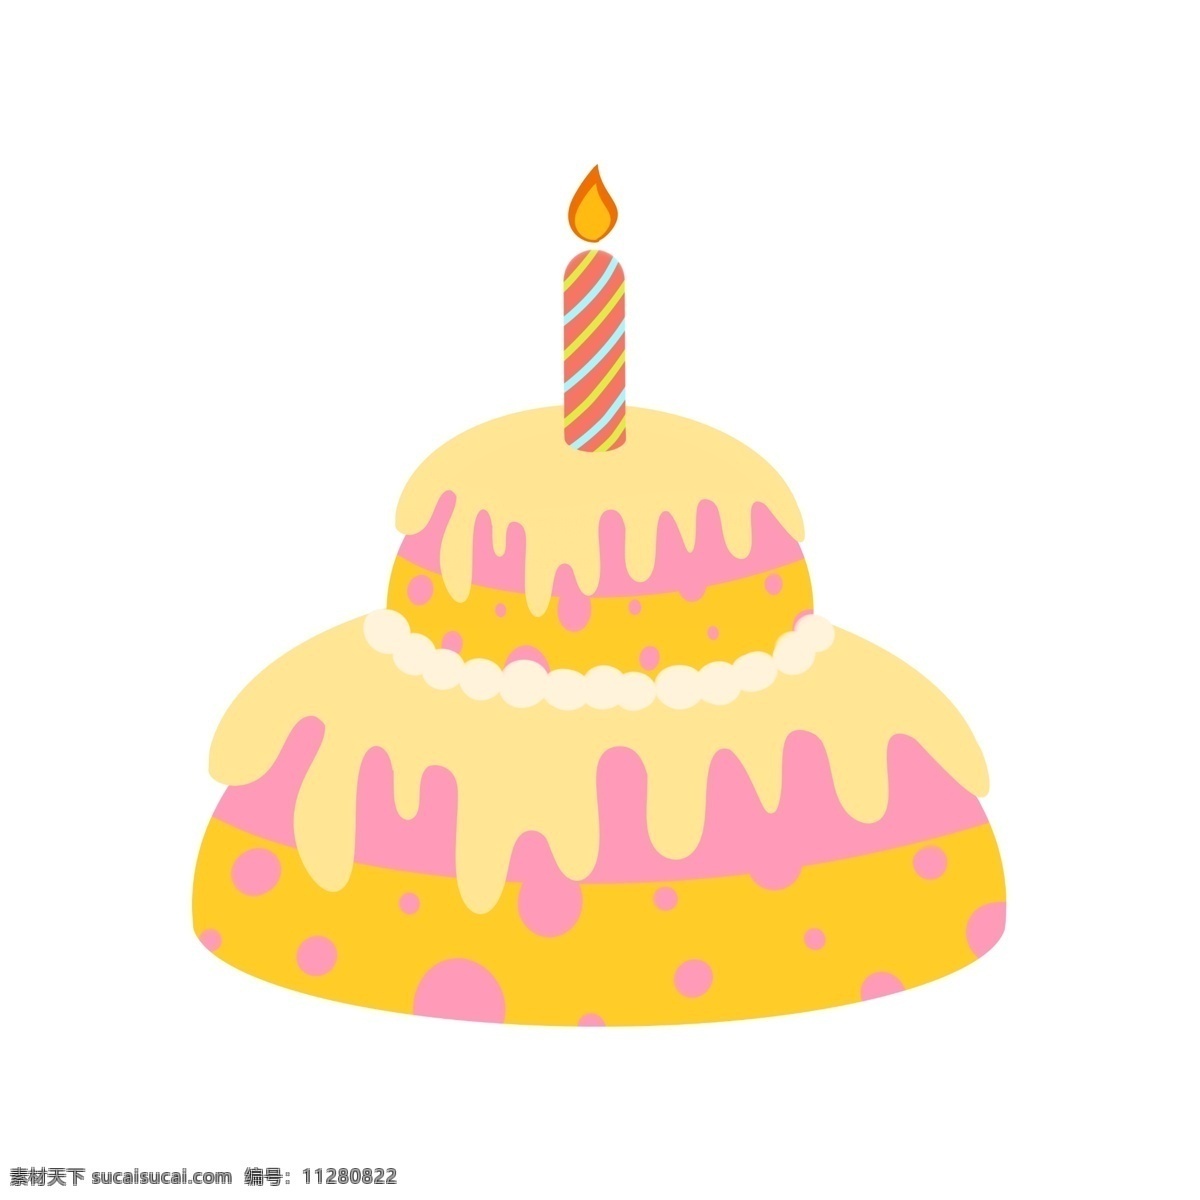 可爱 黄色 蛋糕 插画 可爱的蛋糕 黄色蛋糕 双层蛋糕 生日蜡烛 节日庆祝 甜品 甜食 美食 食物 烘培